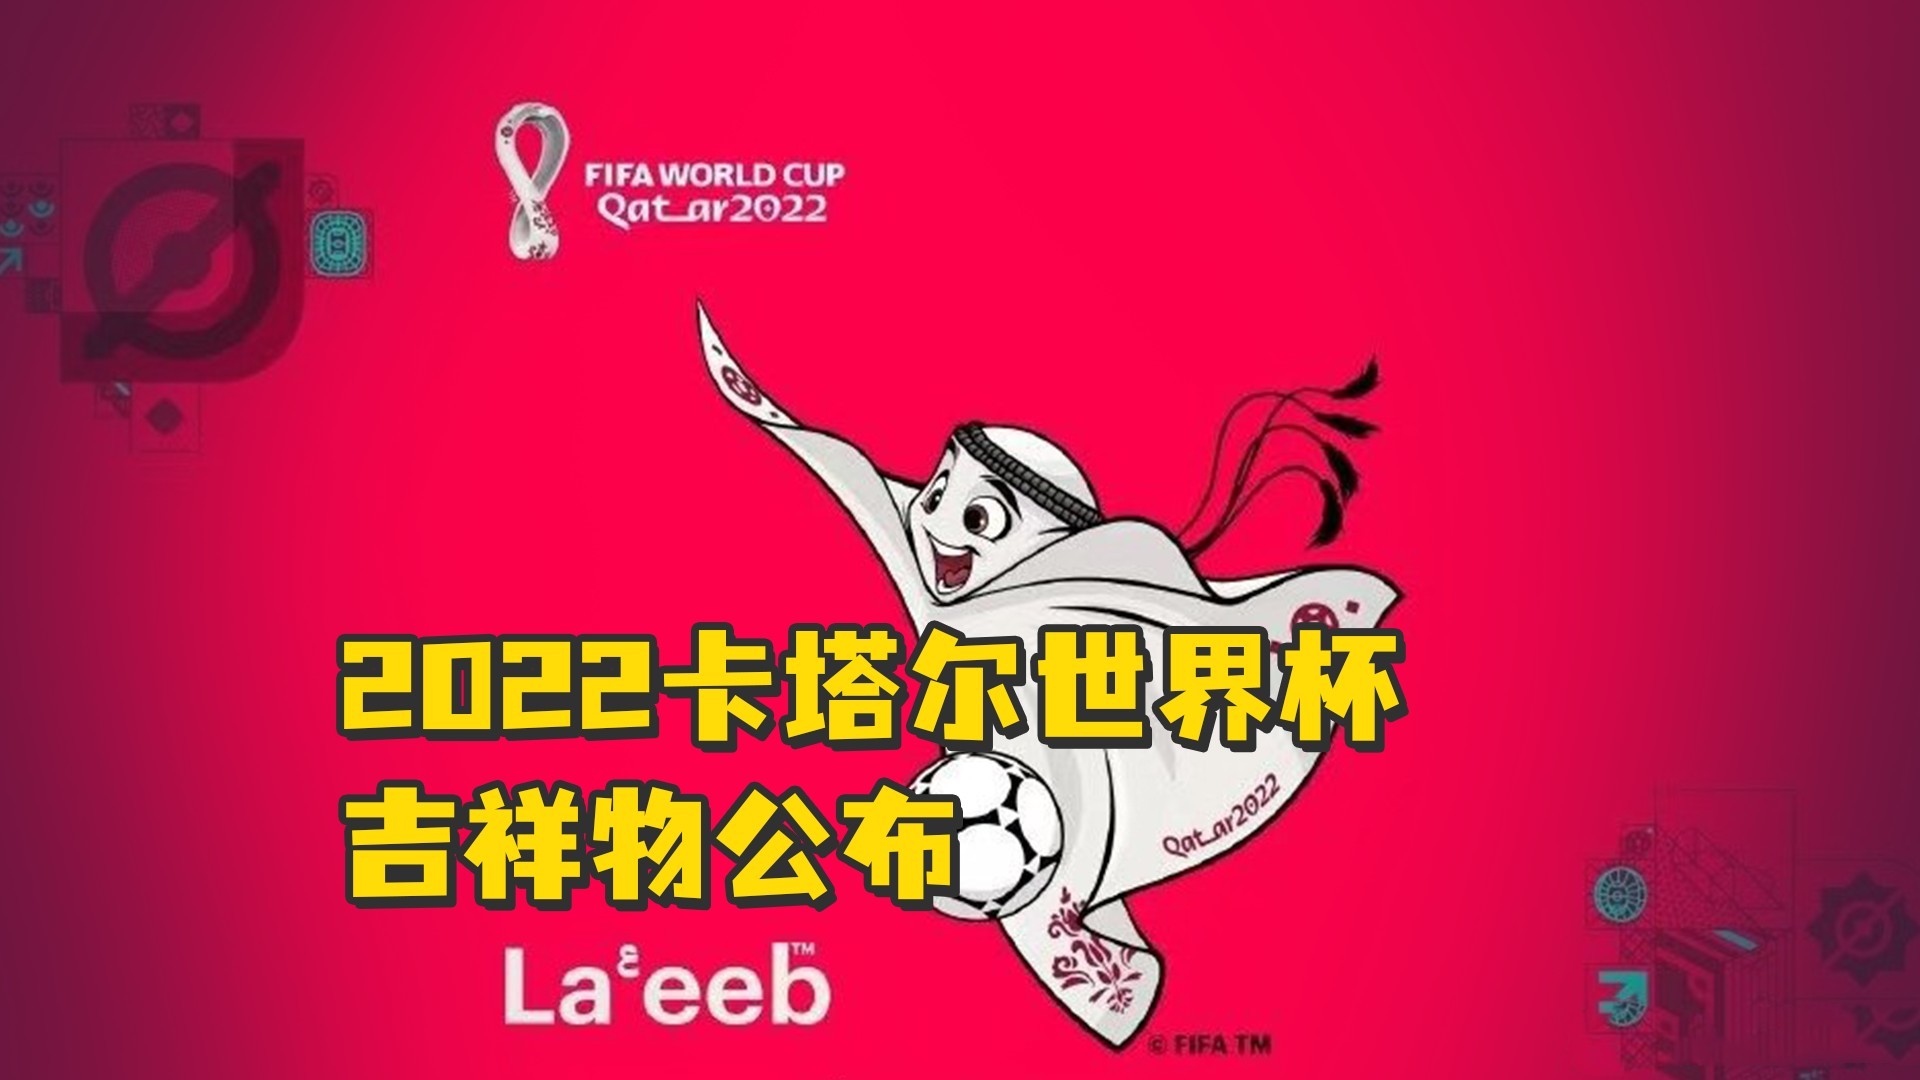 2022卡塔尔世界杯吉祥物公布